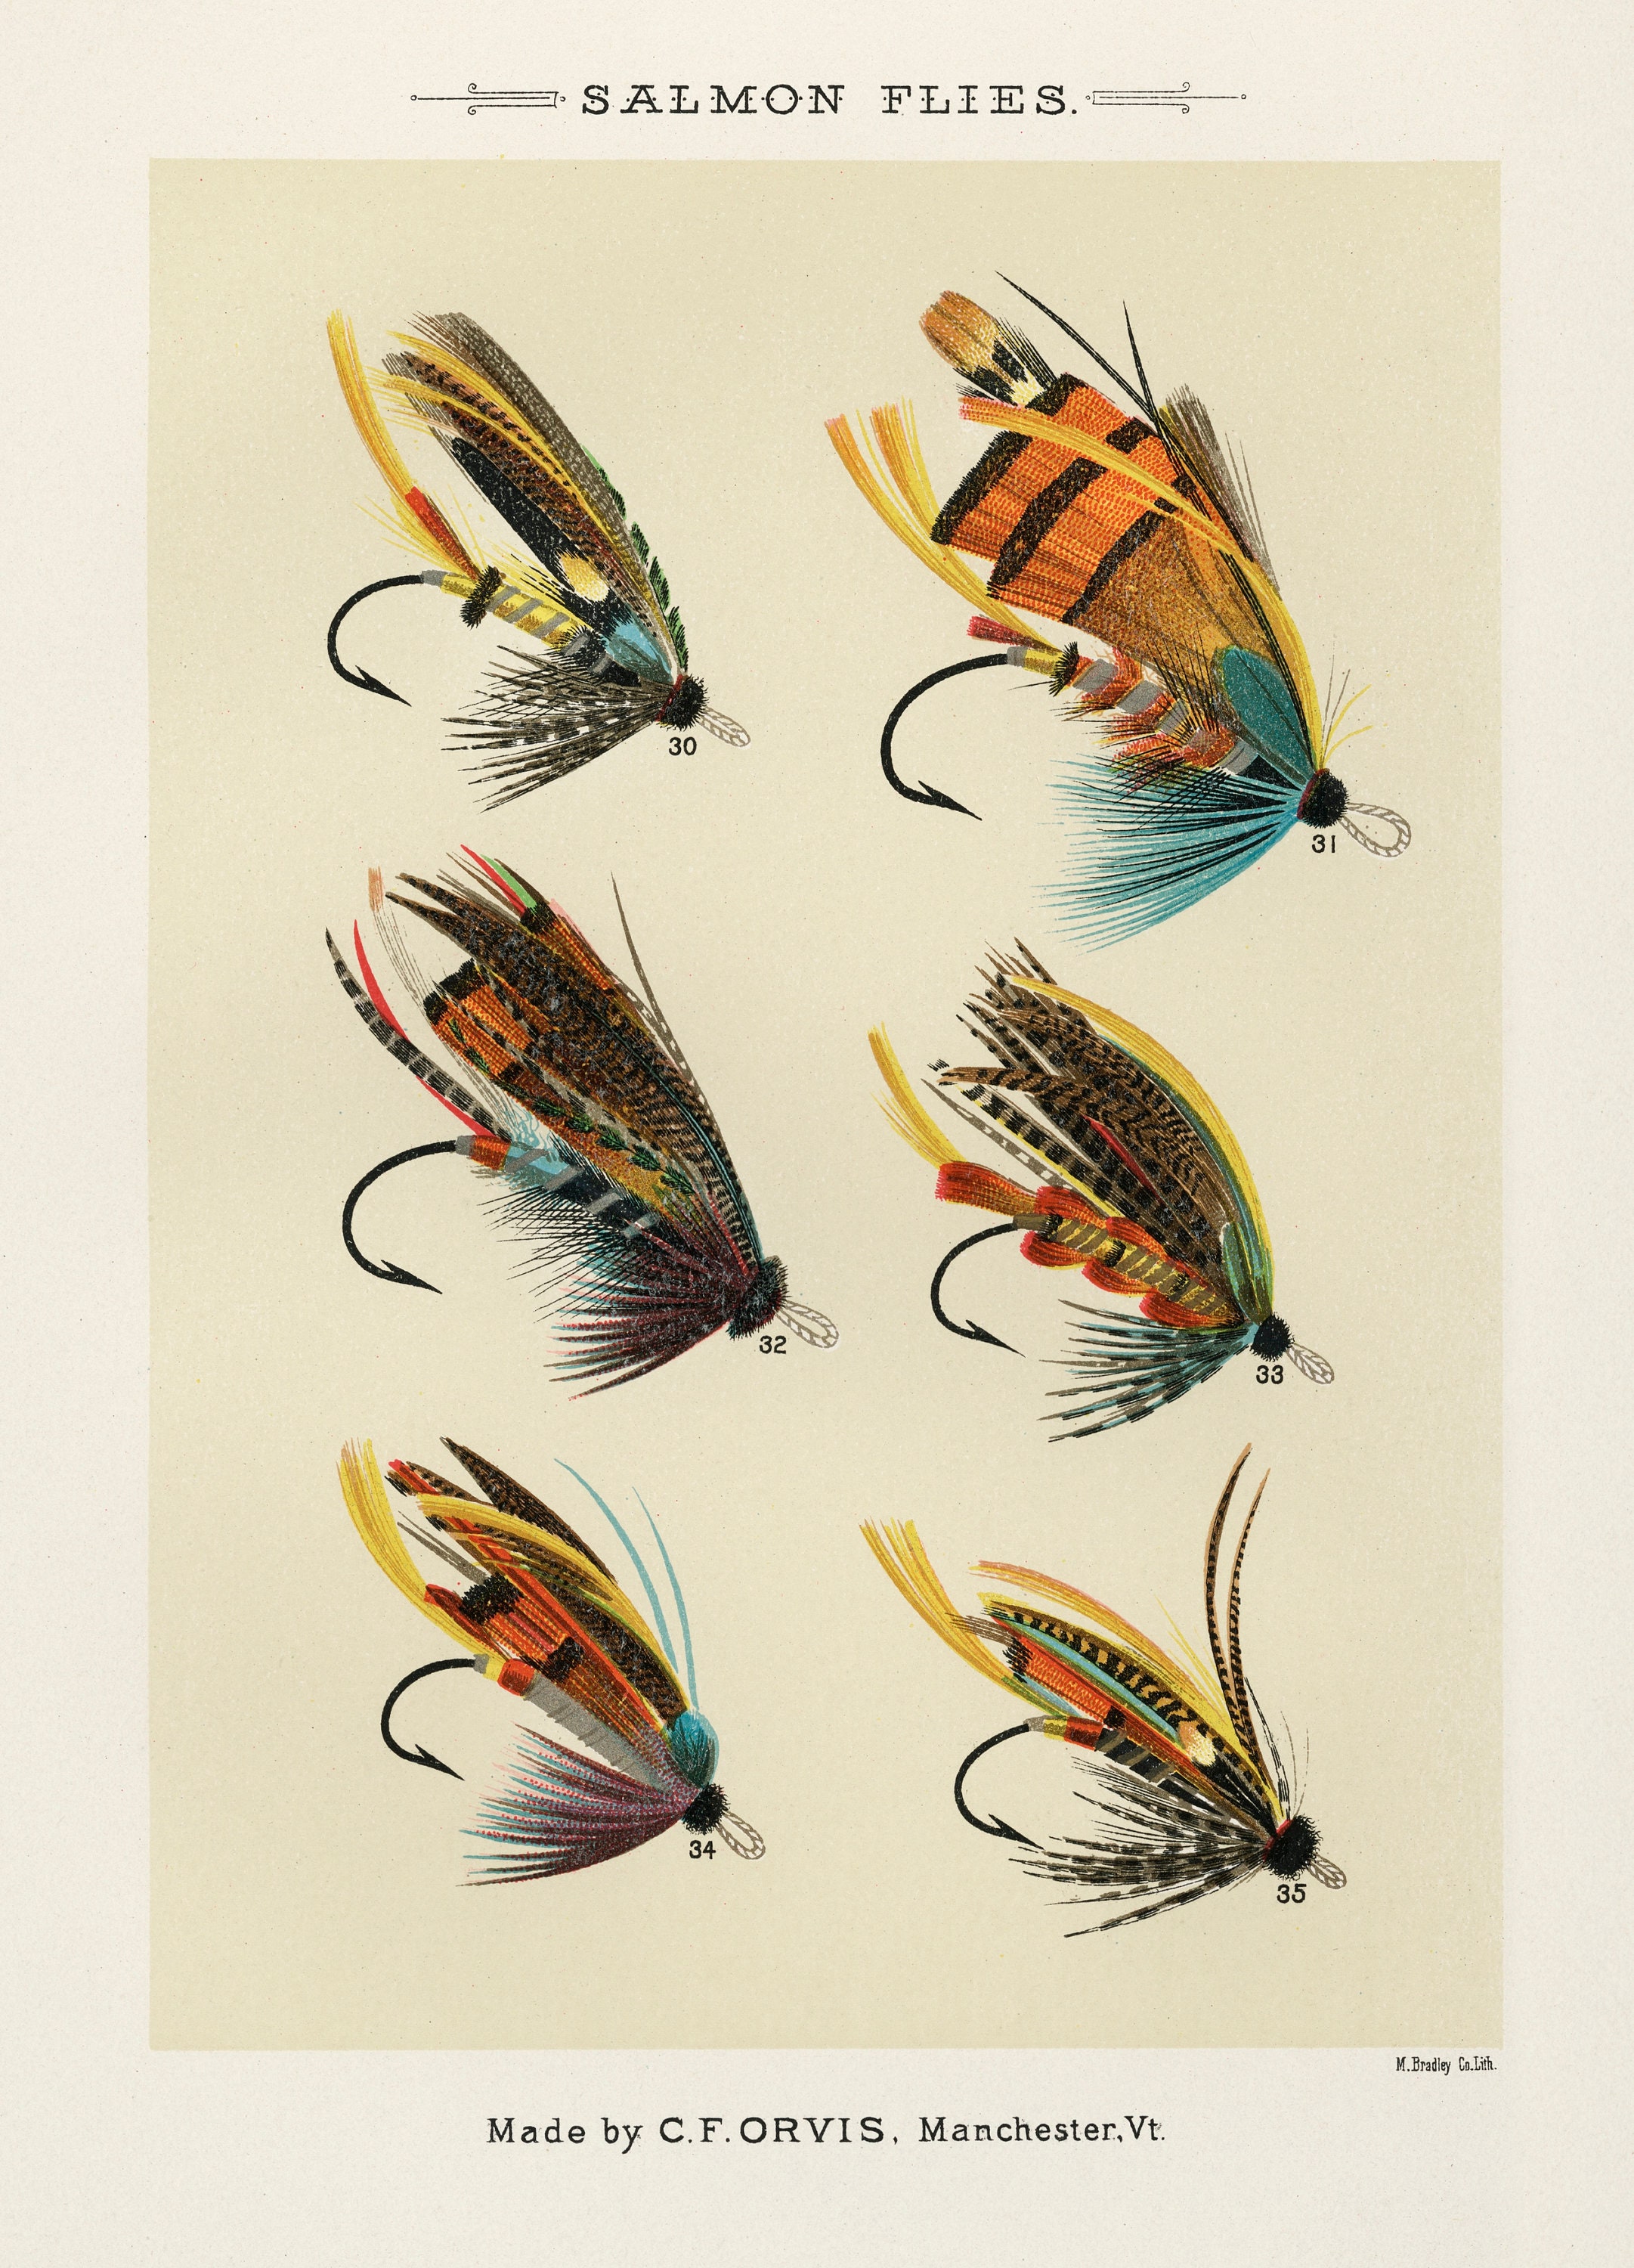 Mary Orvis Salmon Flies 3 Single Printable Wall Art Large High